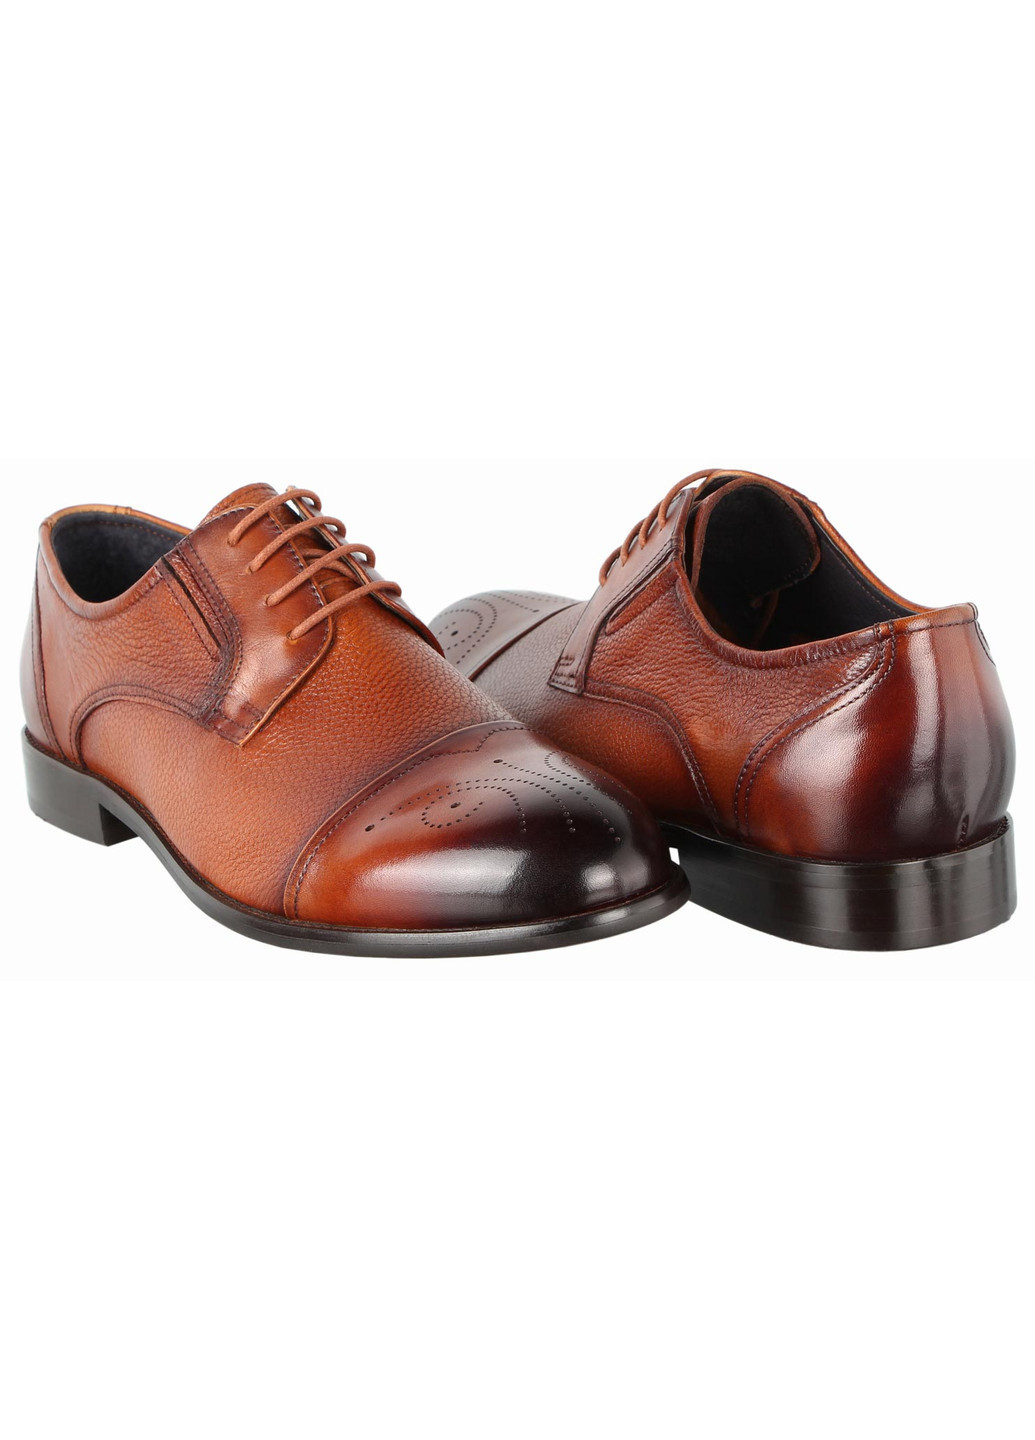 Коричневые мужские классические туфли 197406 Buts на шнурках